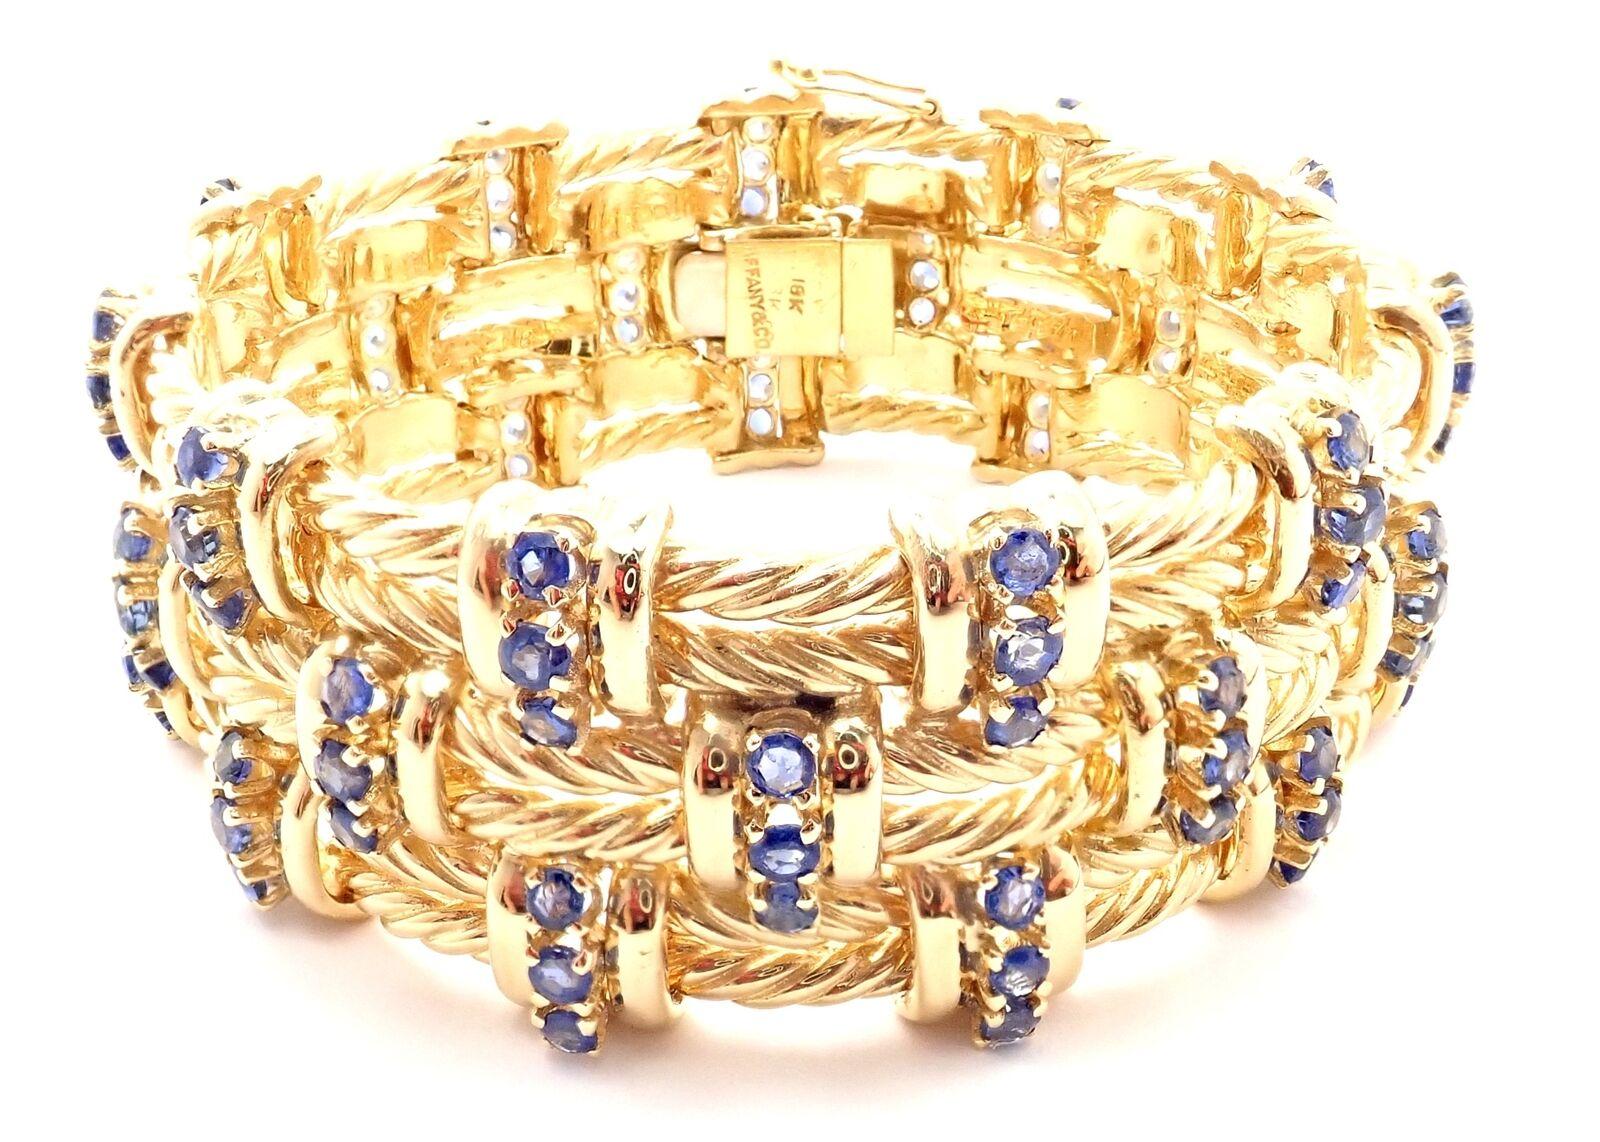 Bracelet à maillons torsadés en or jaune 18k et saphir par Tiffany & Co.
Avec 99 saphirs ronds d'un poids approximatif de 9,24ct
Ce bracelet est accompagné d'une évaluation de remplacement au détail effectuée par le magasin Tiffany de New